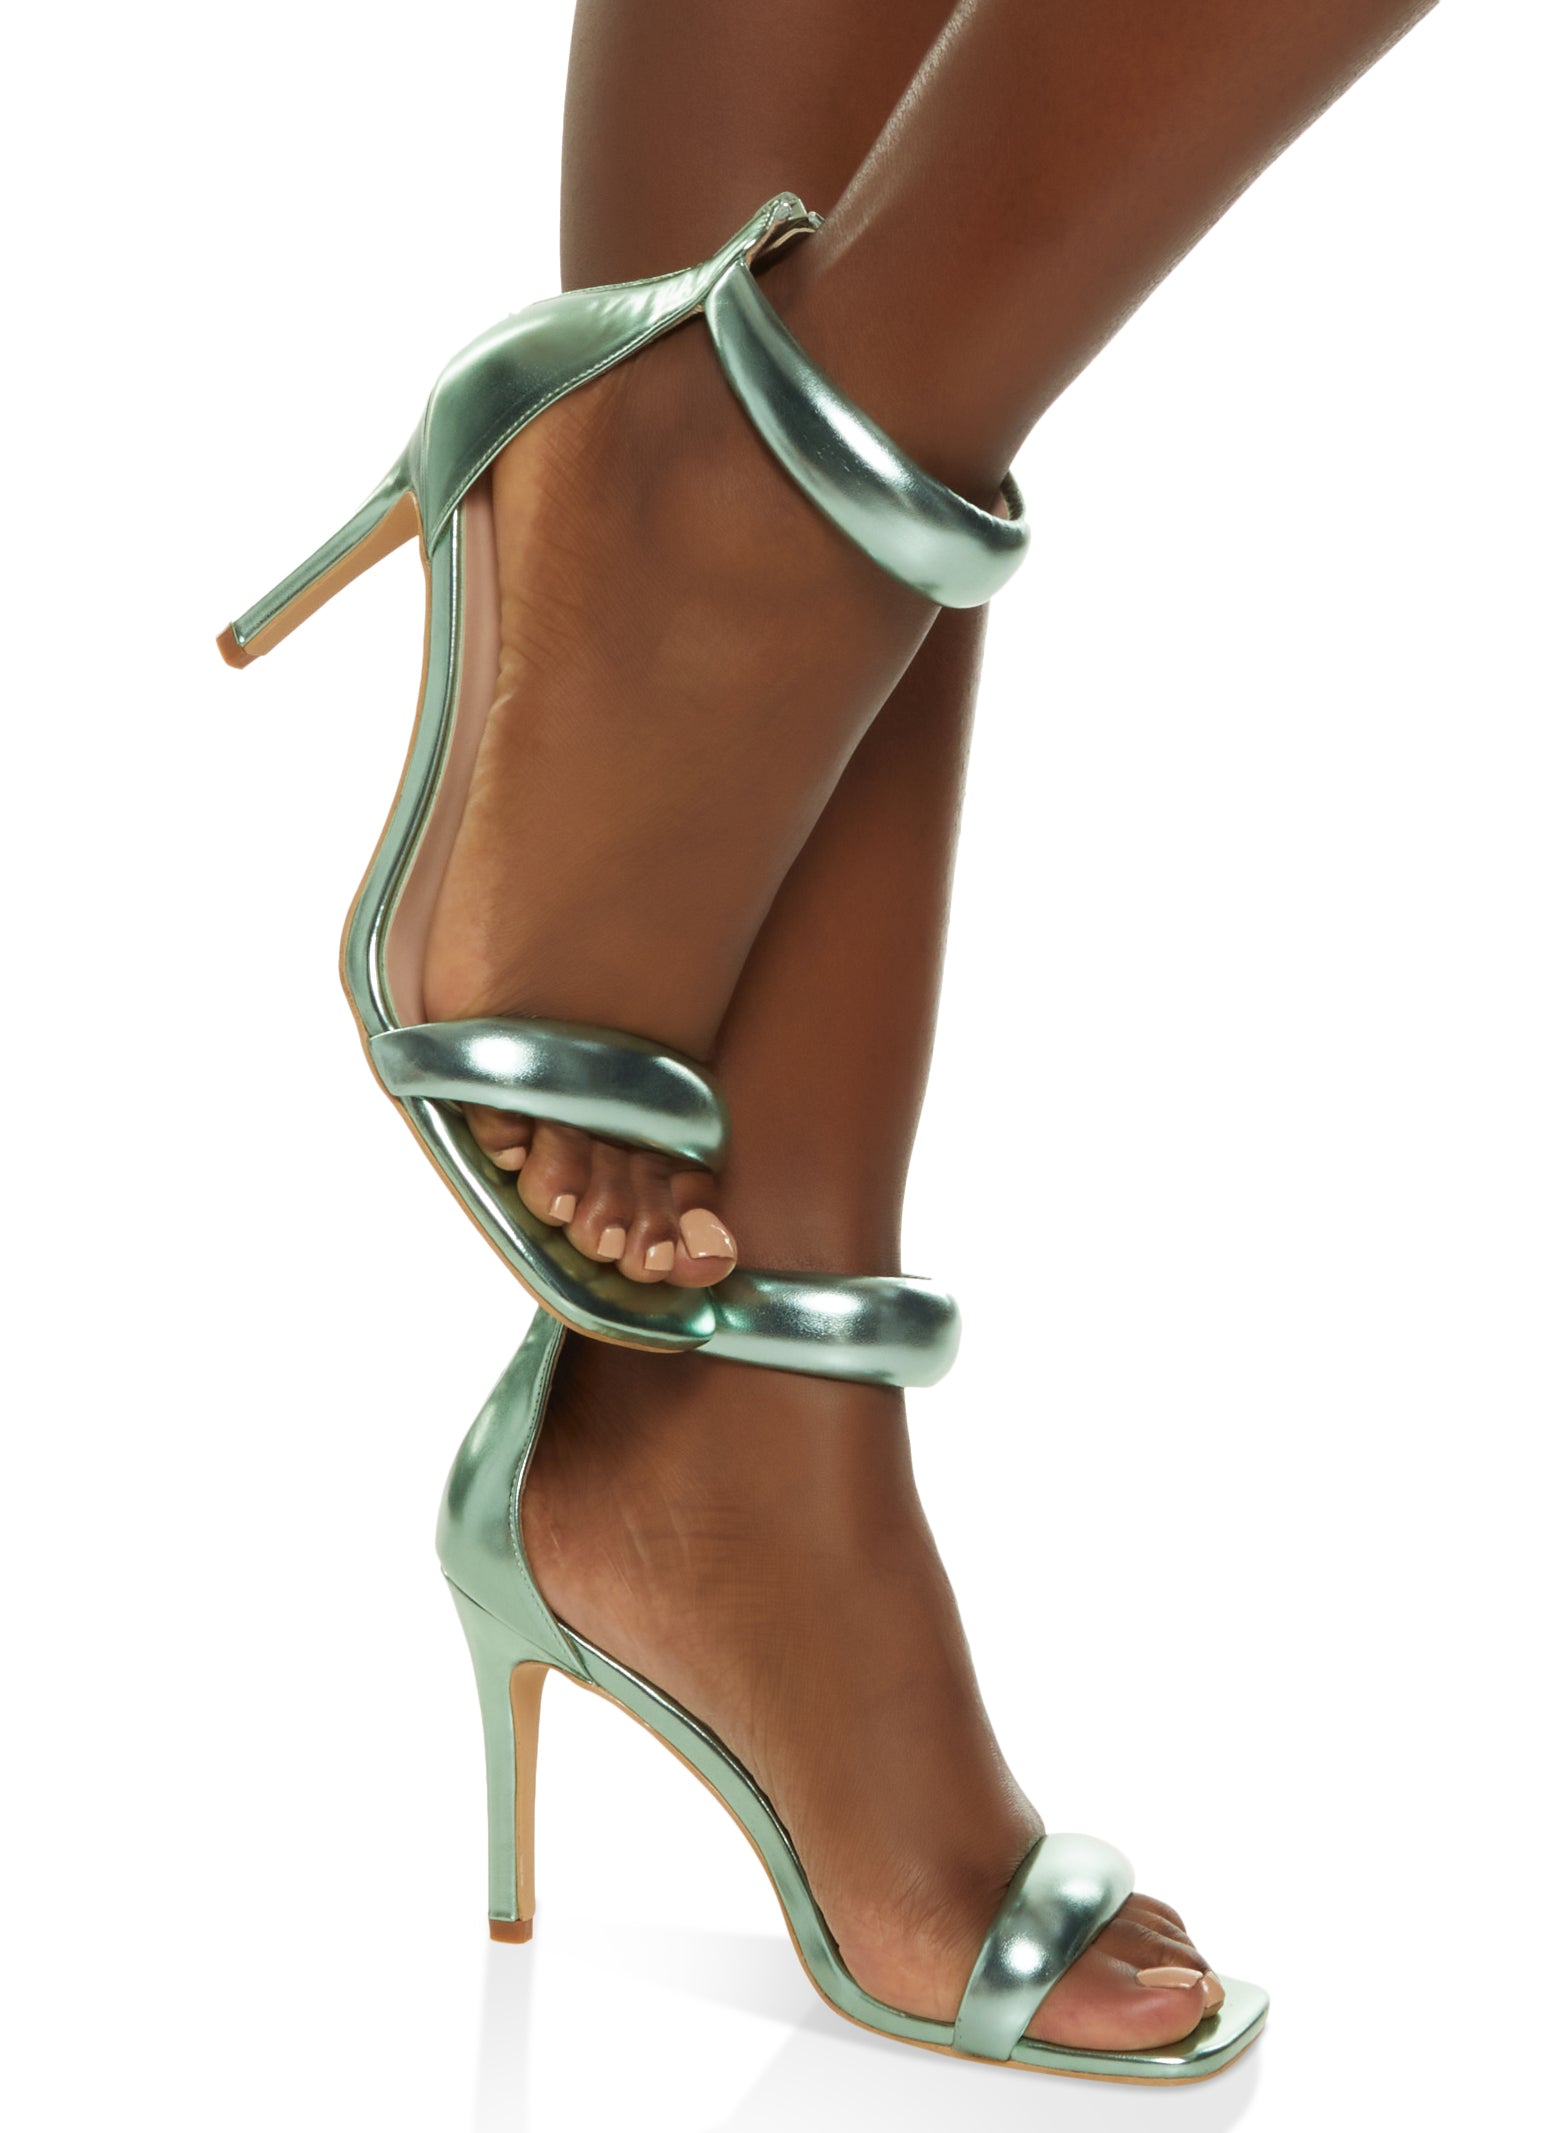 Giuseppe Zanotti - High heels shoes - Size: Shoes / EU 39 - Catawiki